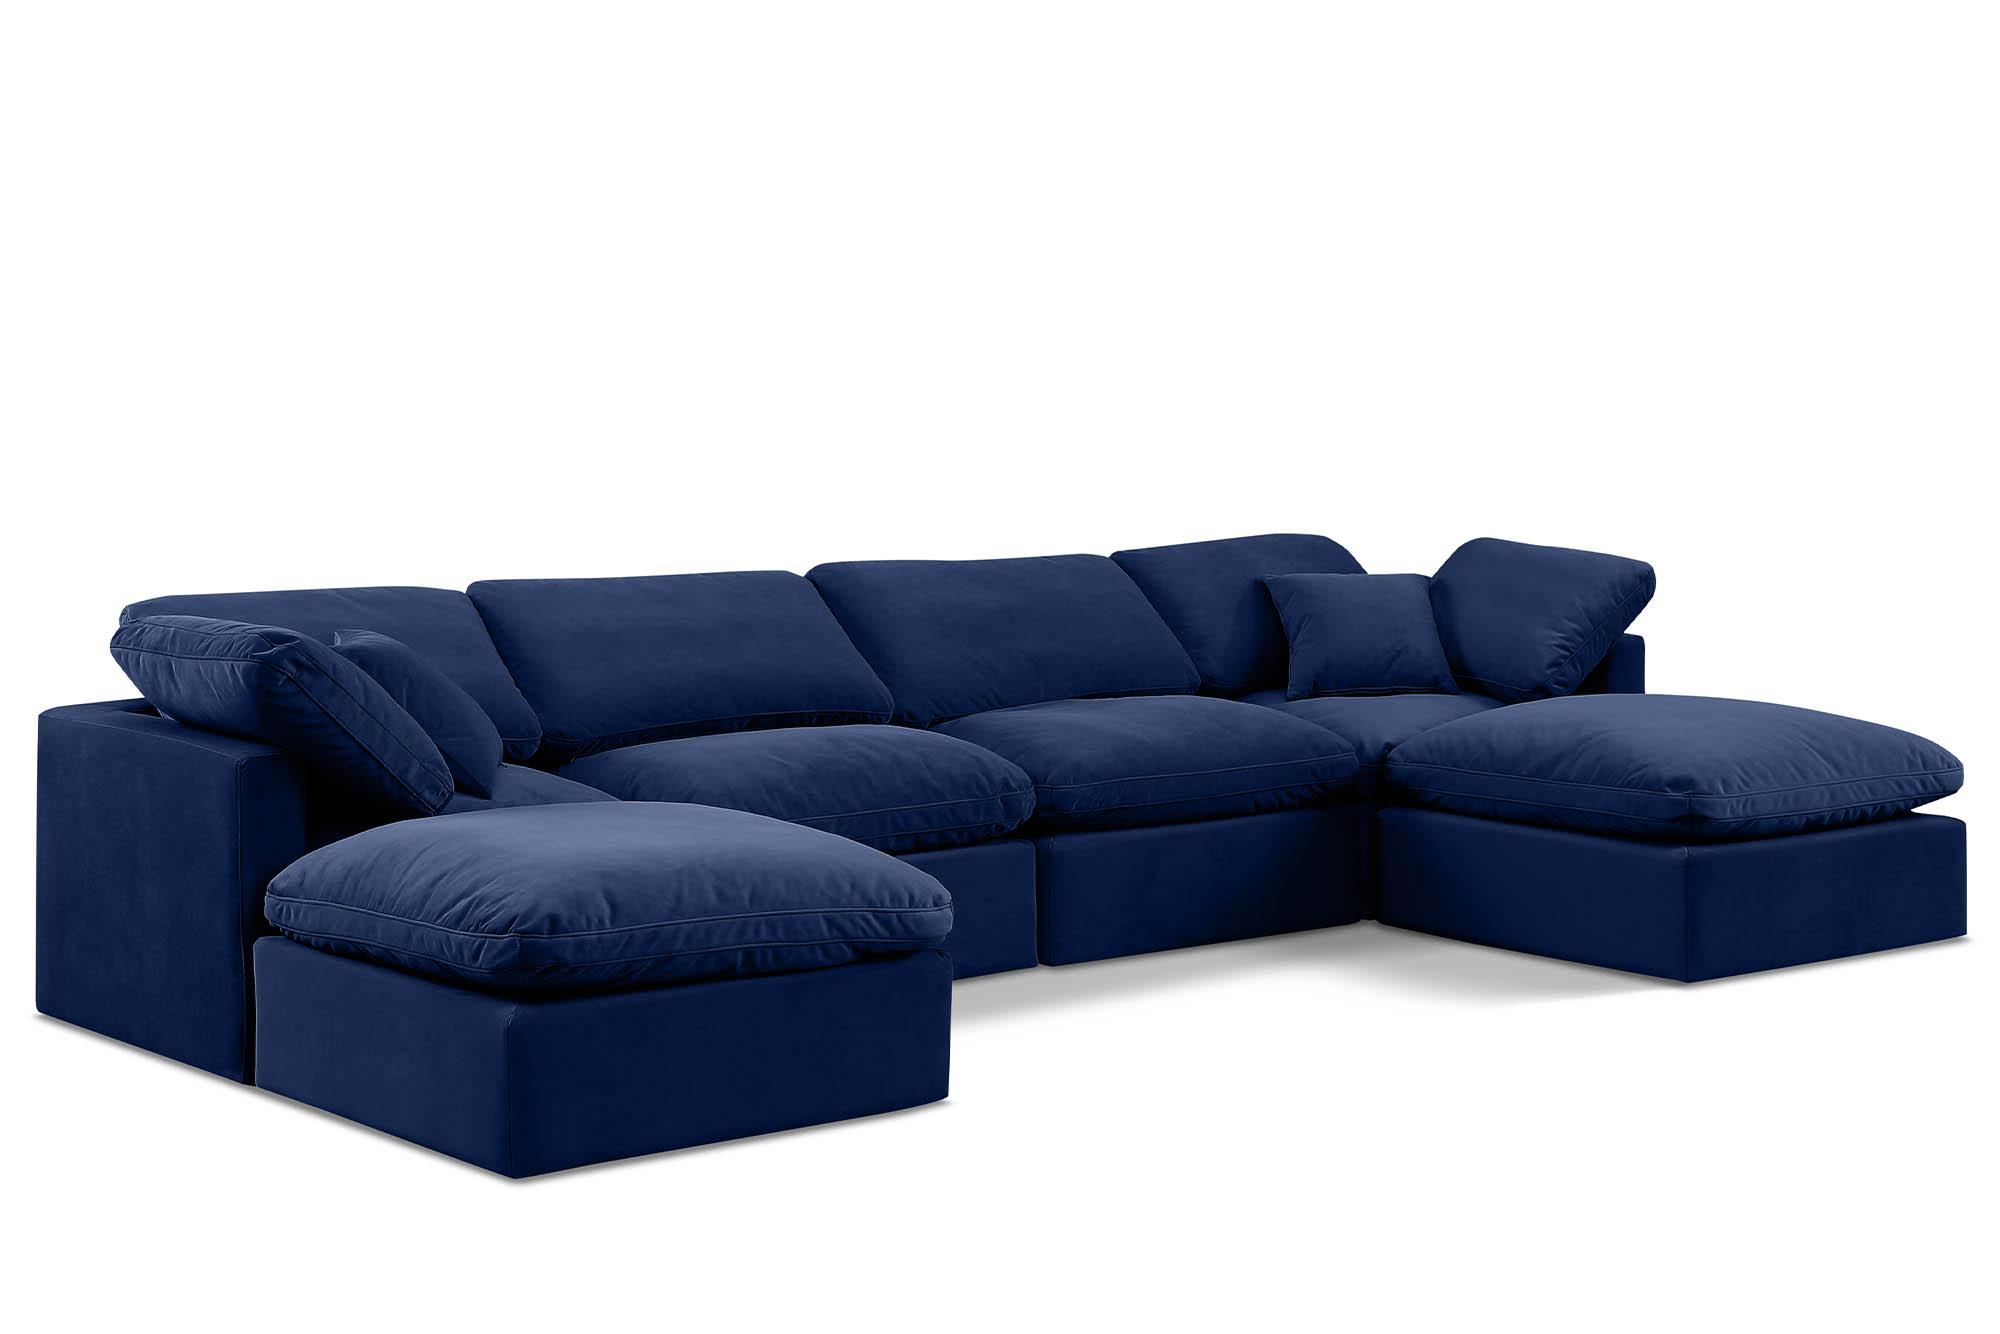 Contemporary, Modern Modular Sectional Sofa INDULGE 147Navy-Sec6B 147Navy-Sec6B in Navy Velvet